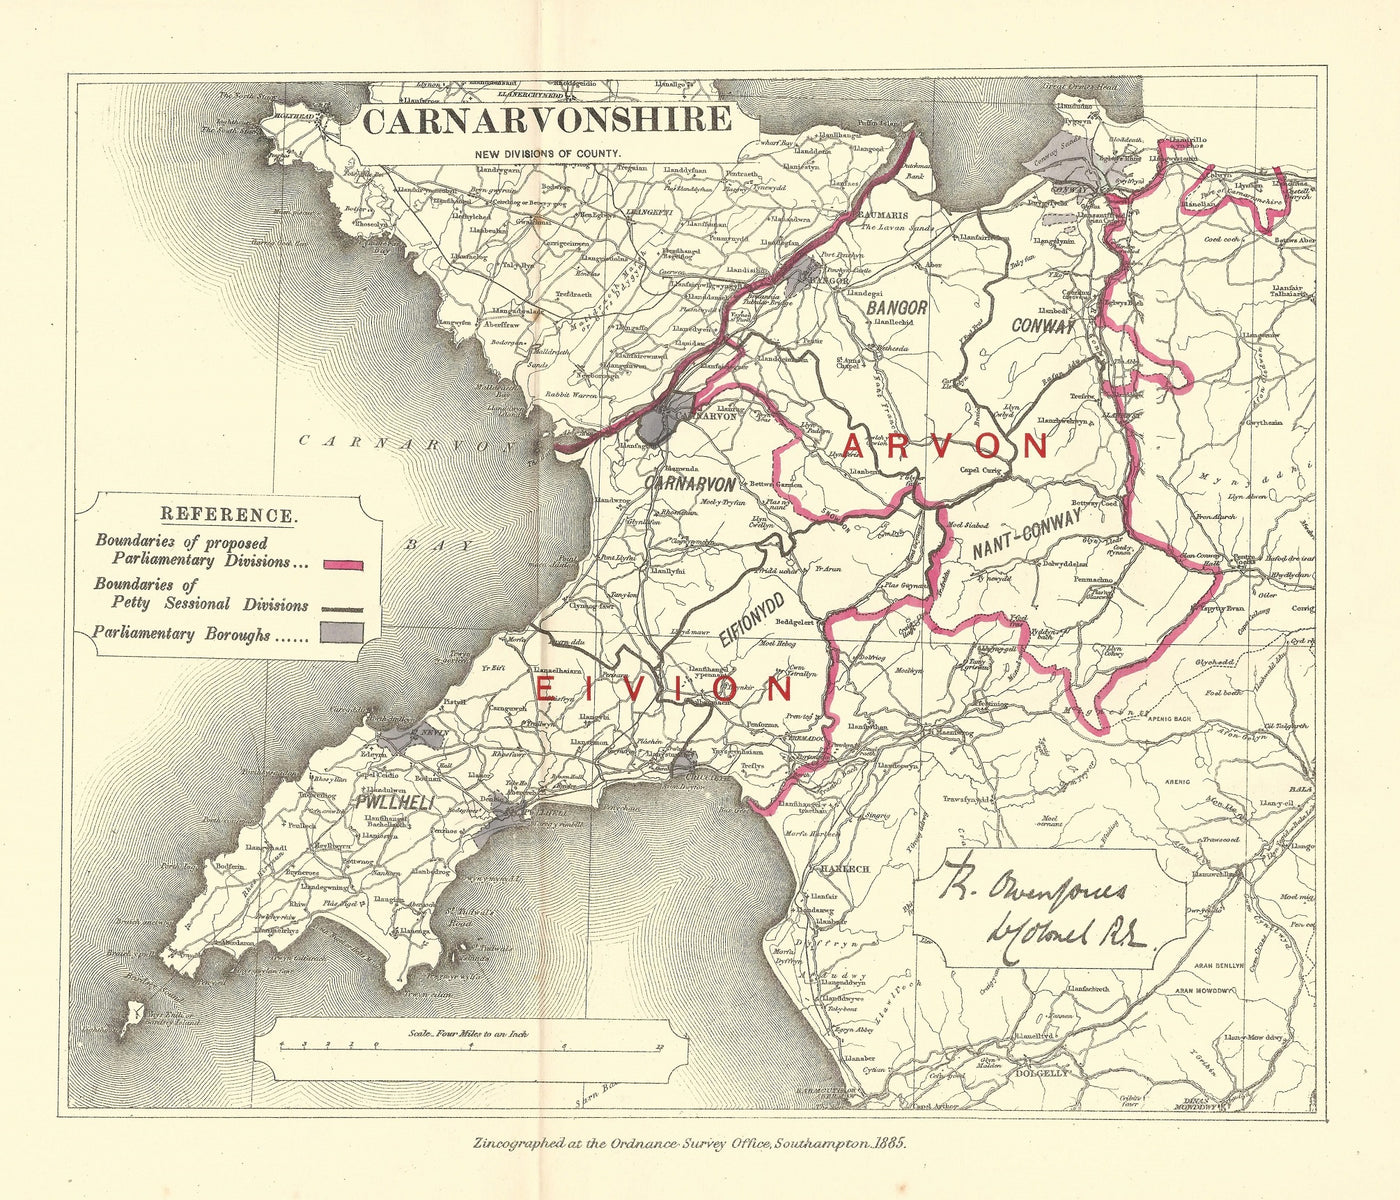 Caernarfonshire Caernarvonshire Carnarvonshire map 1885